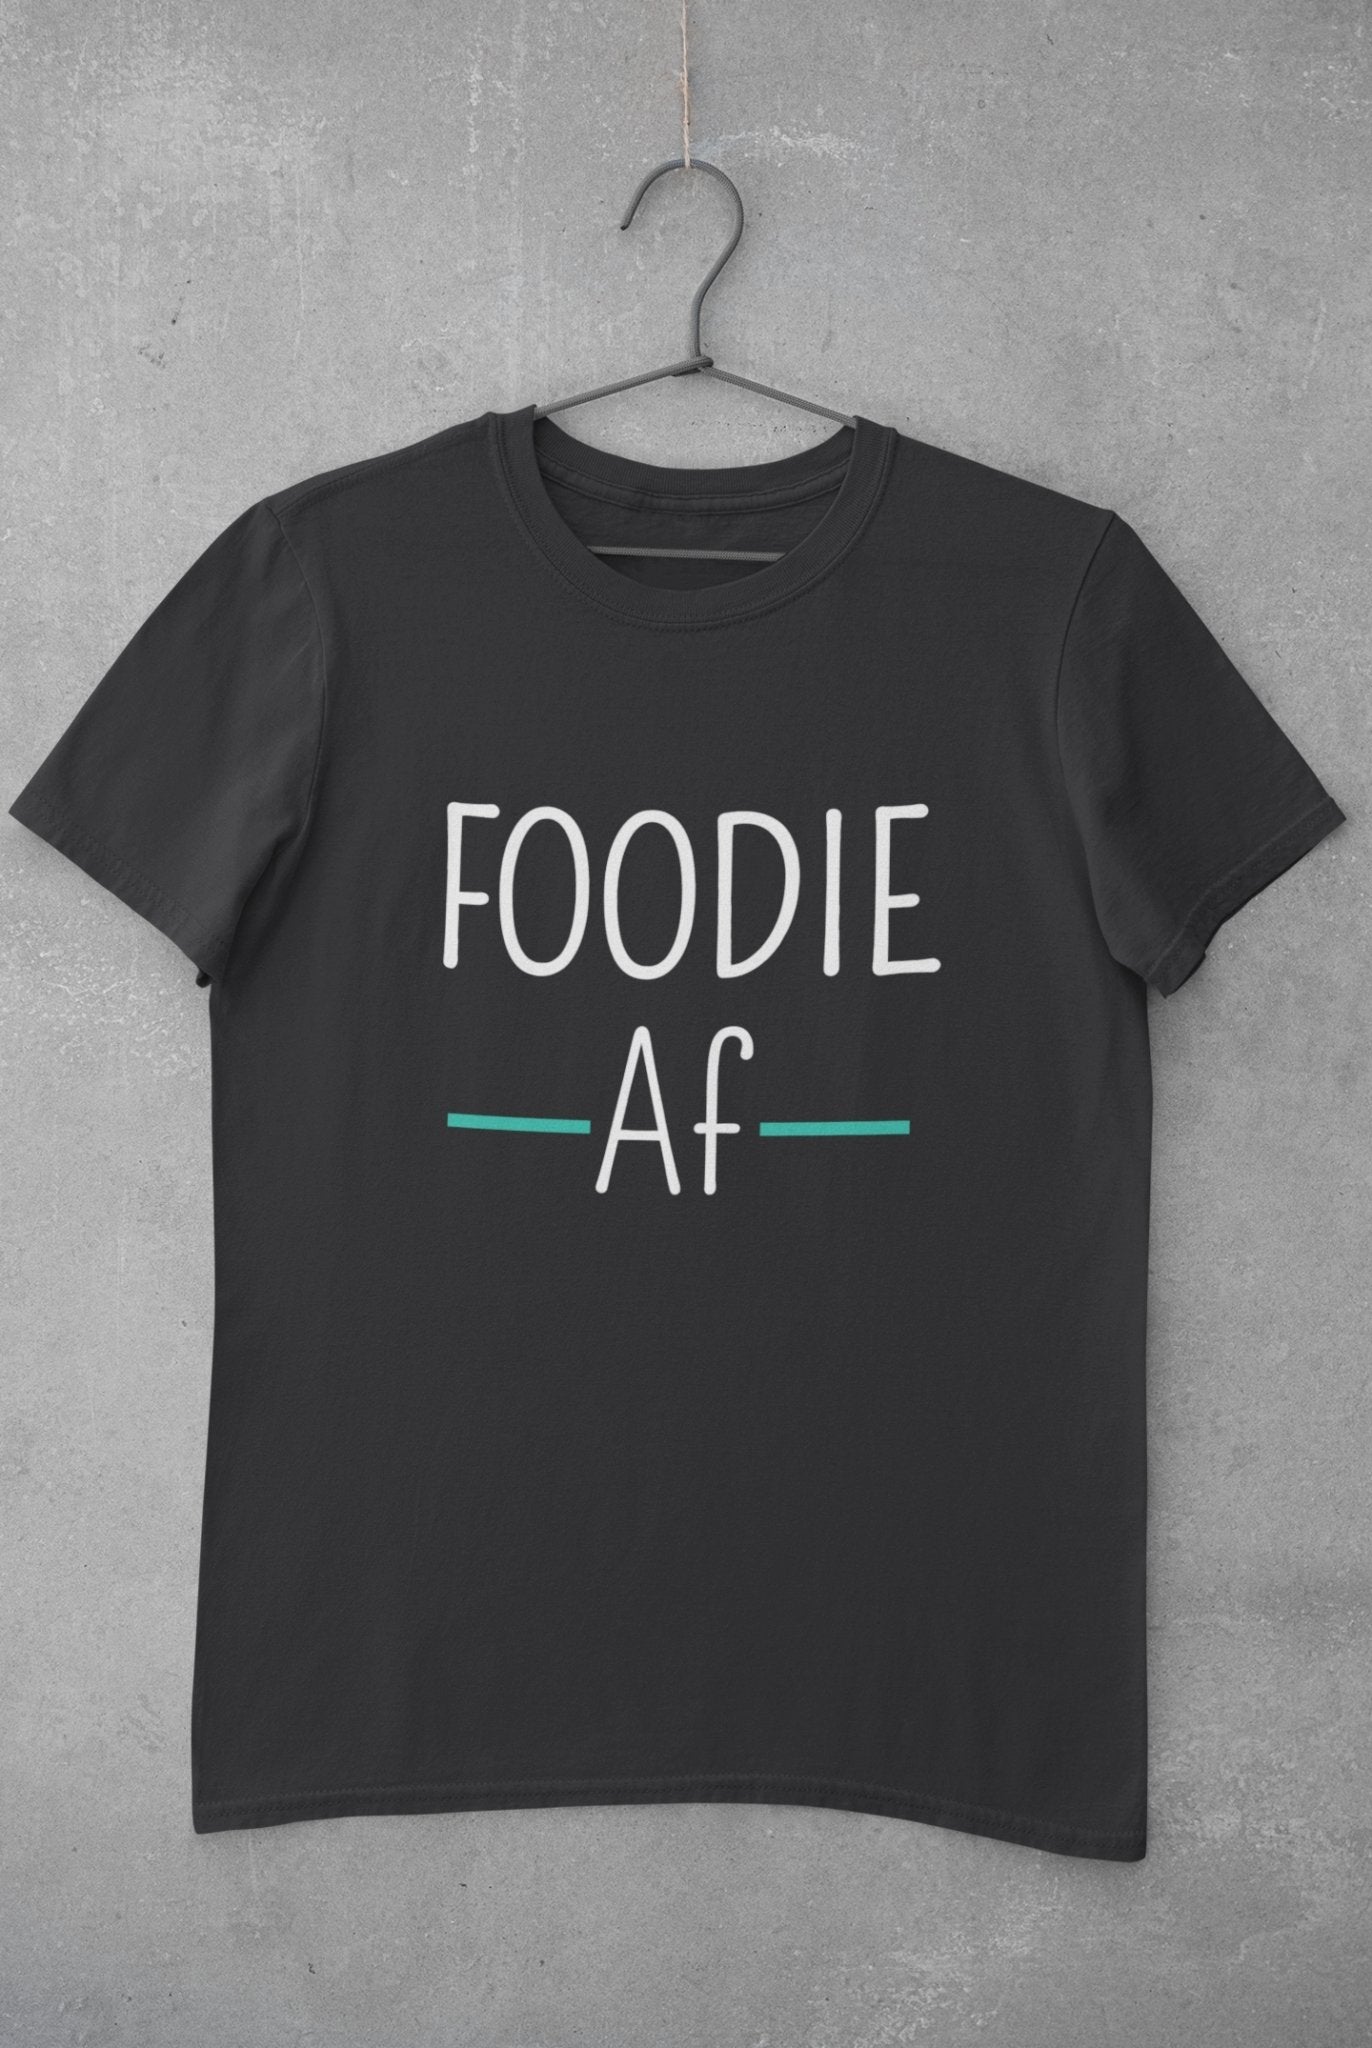 Foodie Af Women Half Sleeves T-shirt- FunkyTeesClub - Funky Tees Club